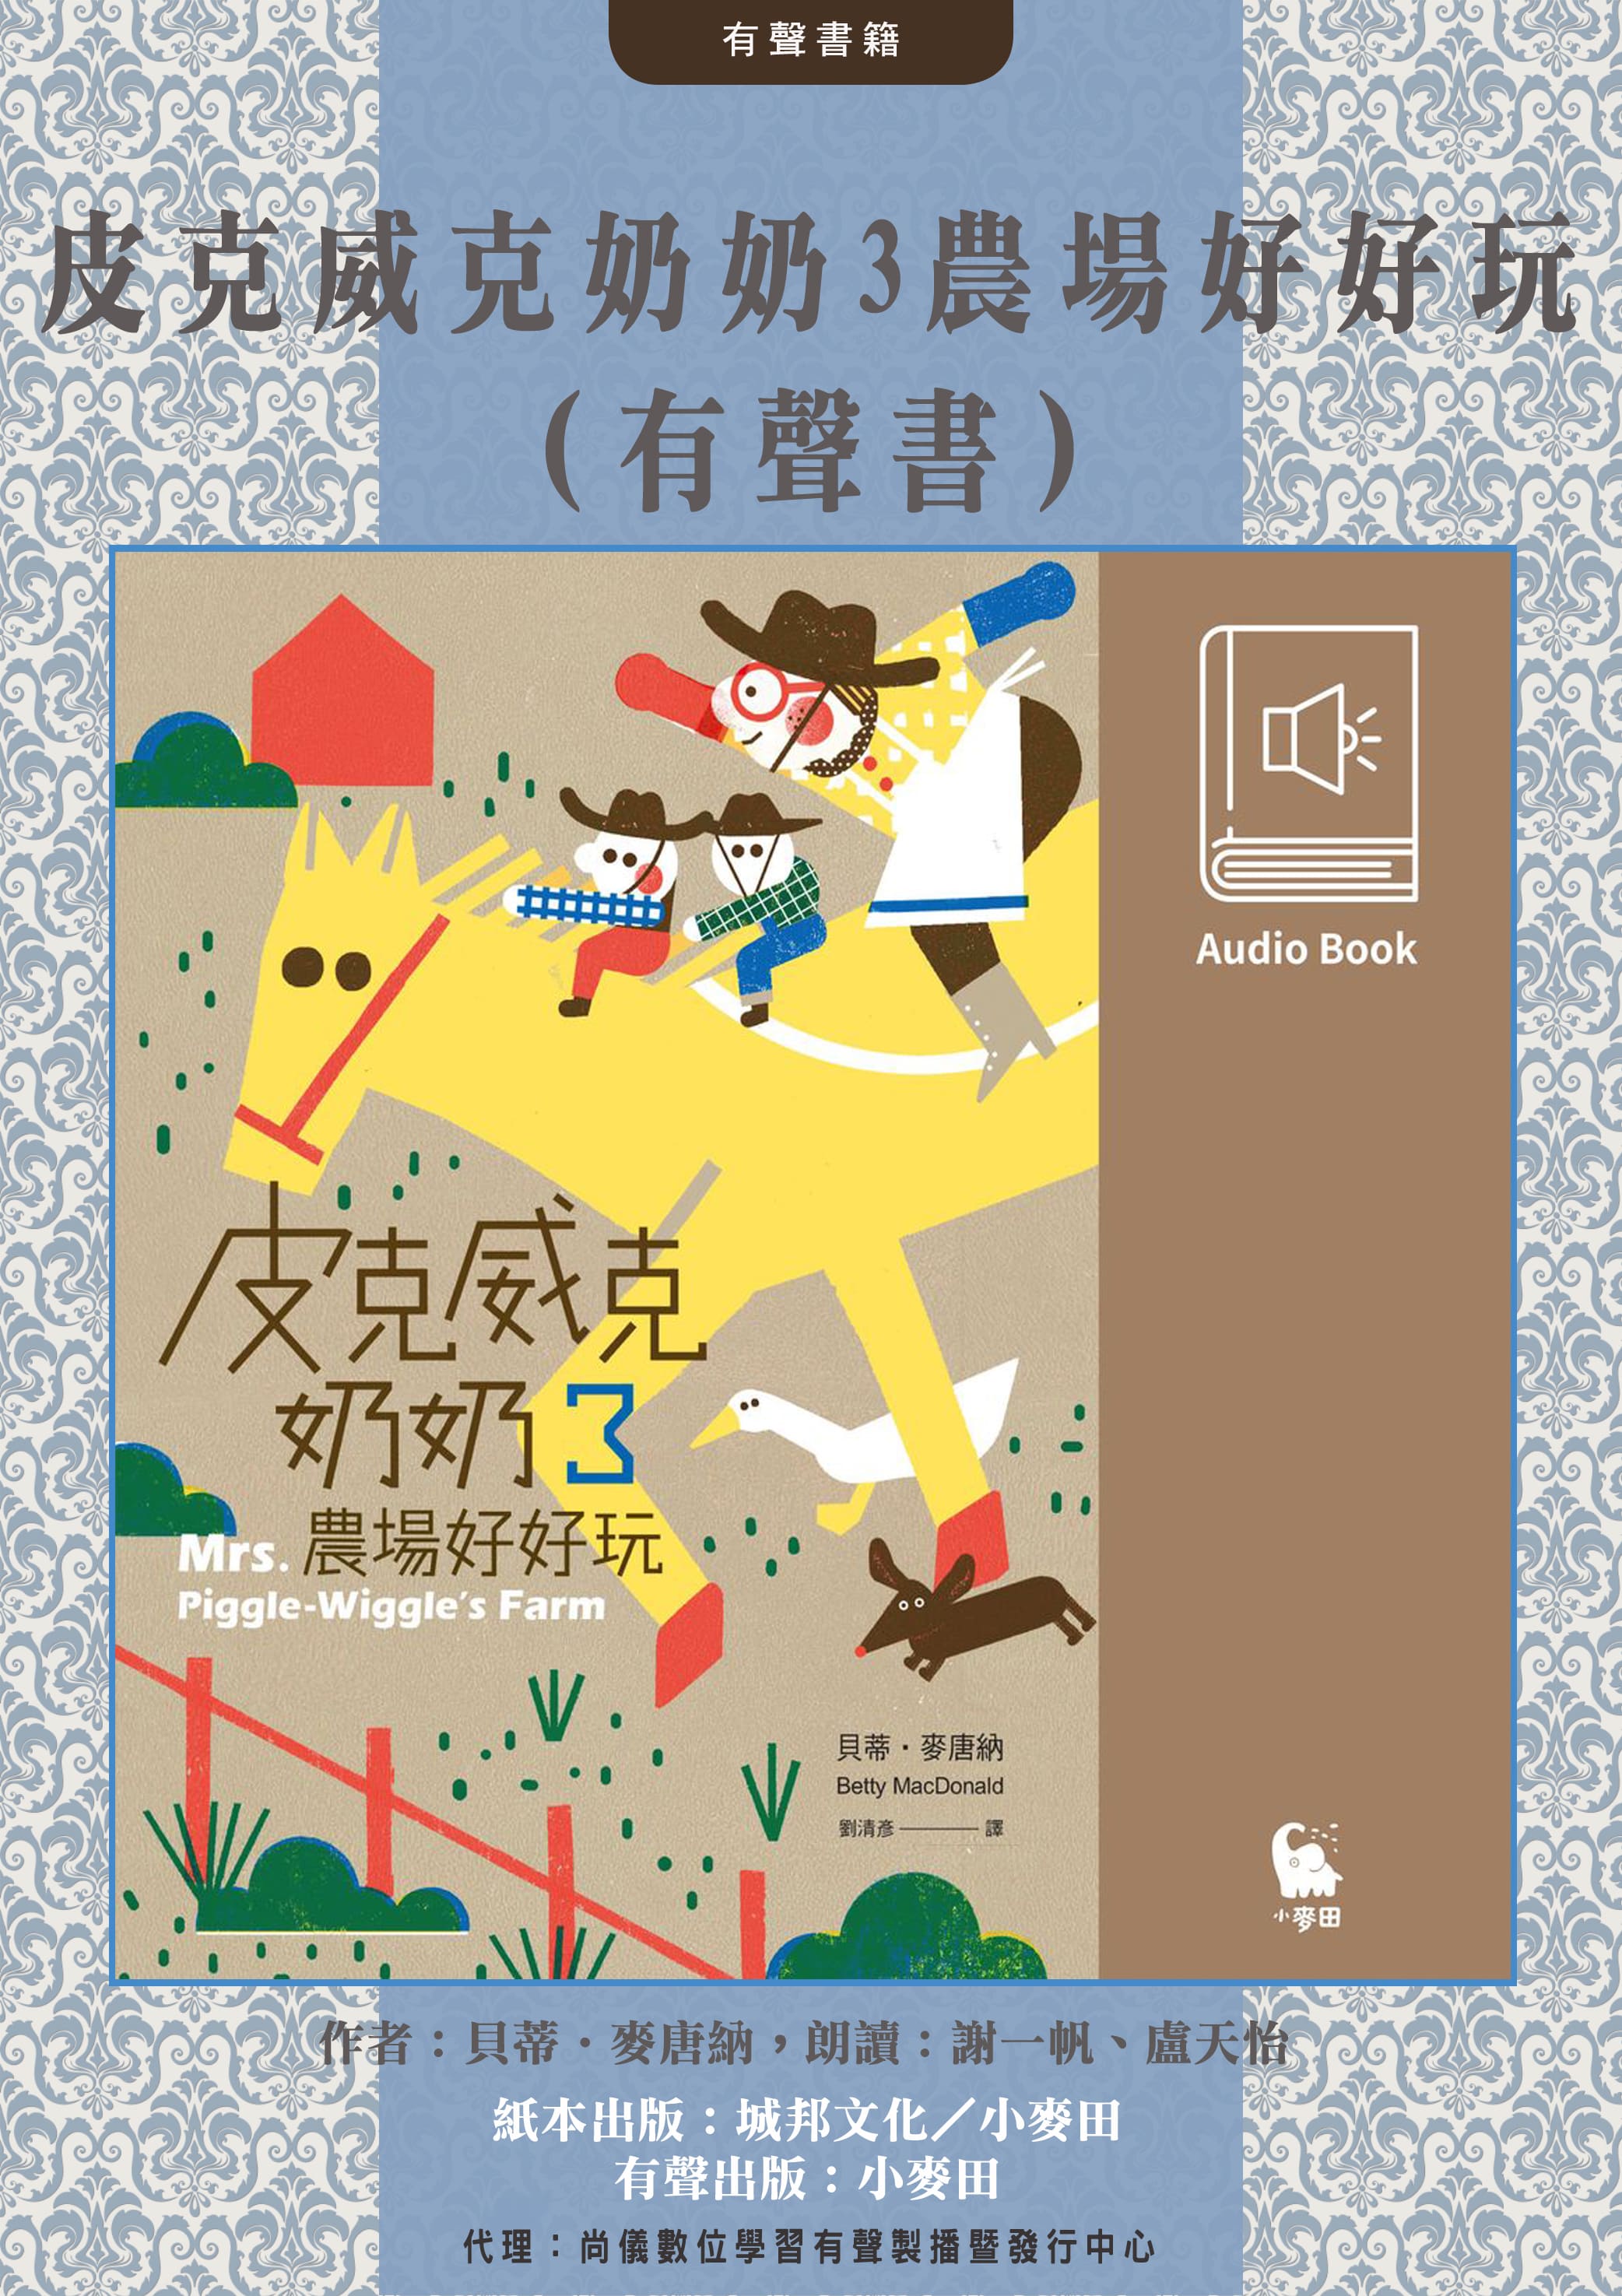 皮克威克奶奶3農場好好玩（美國兒童文學經典．中文版有聲書首度上市）封面圖